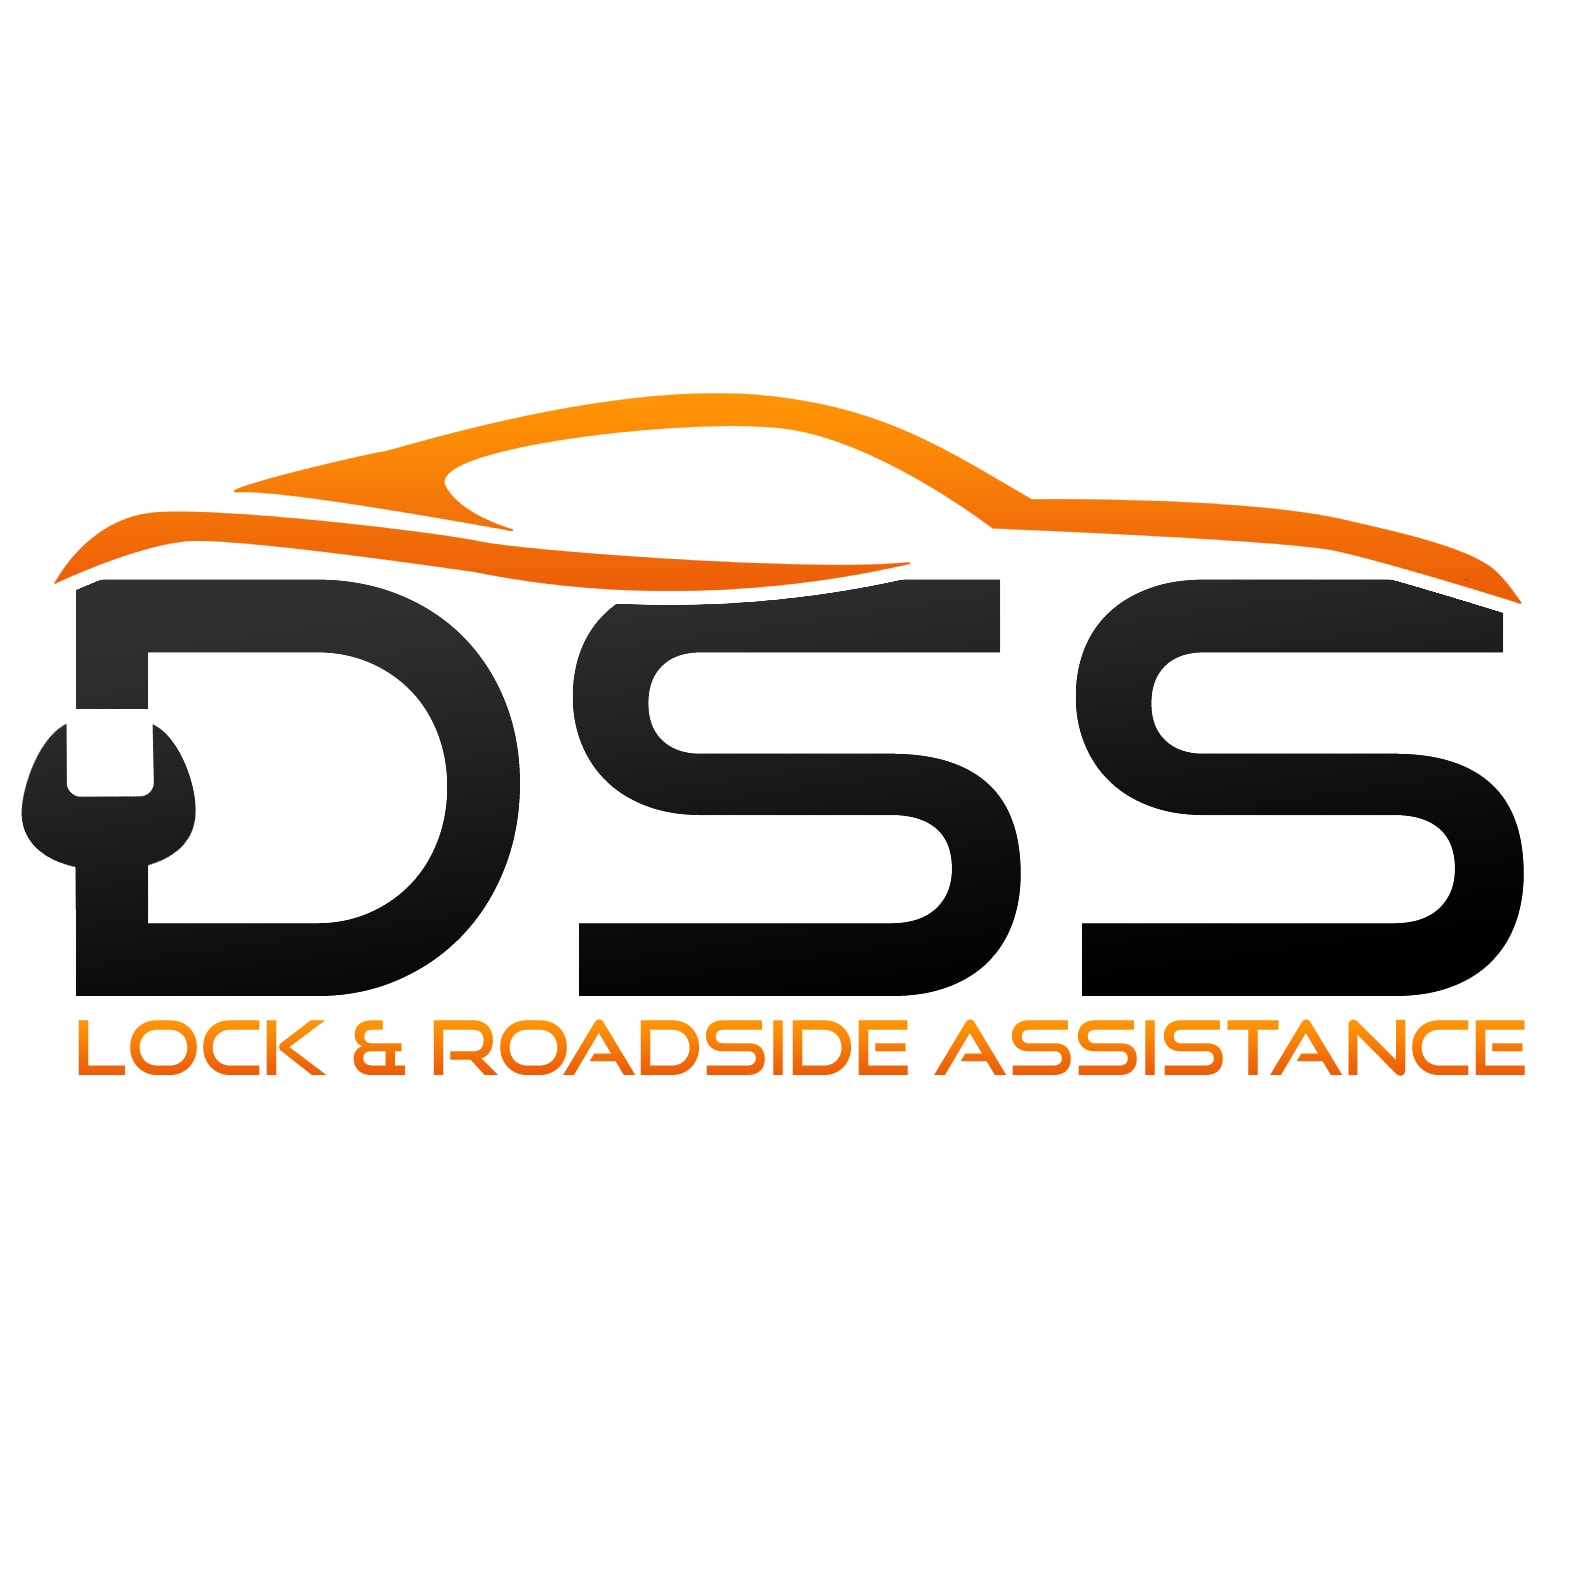 DSS Lock & Roadside Assistance 3105 Co Rd 303, Jourdanton Texas 78026